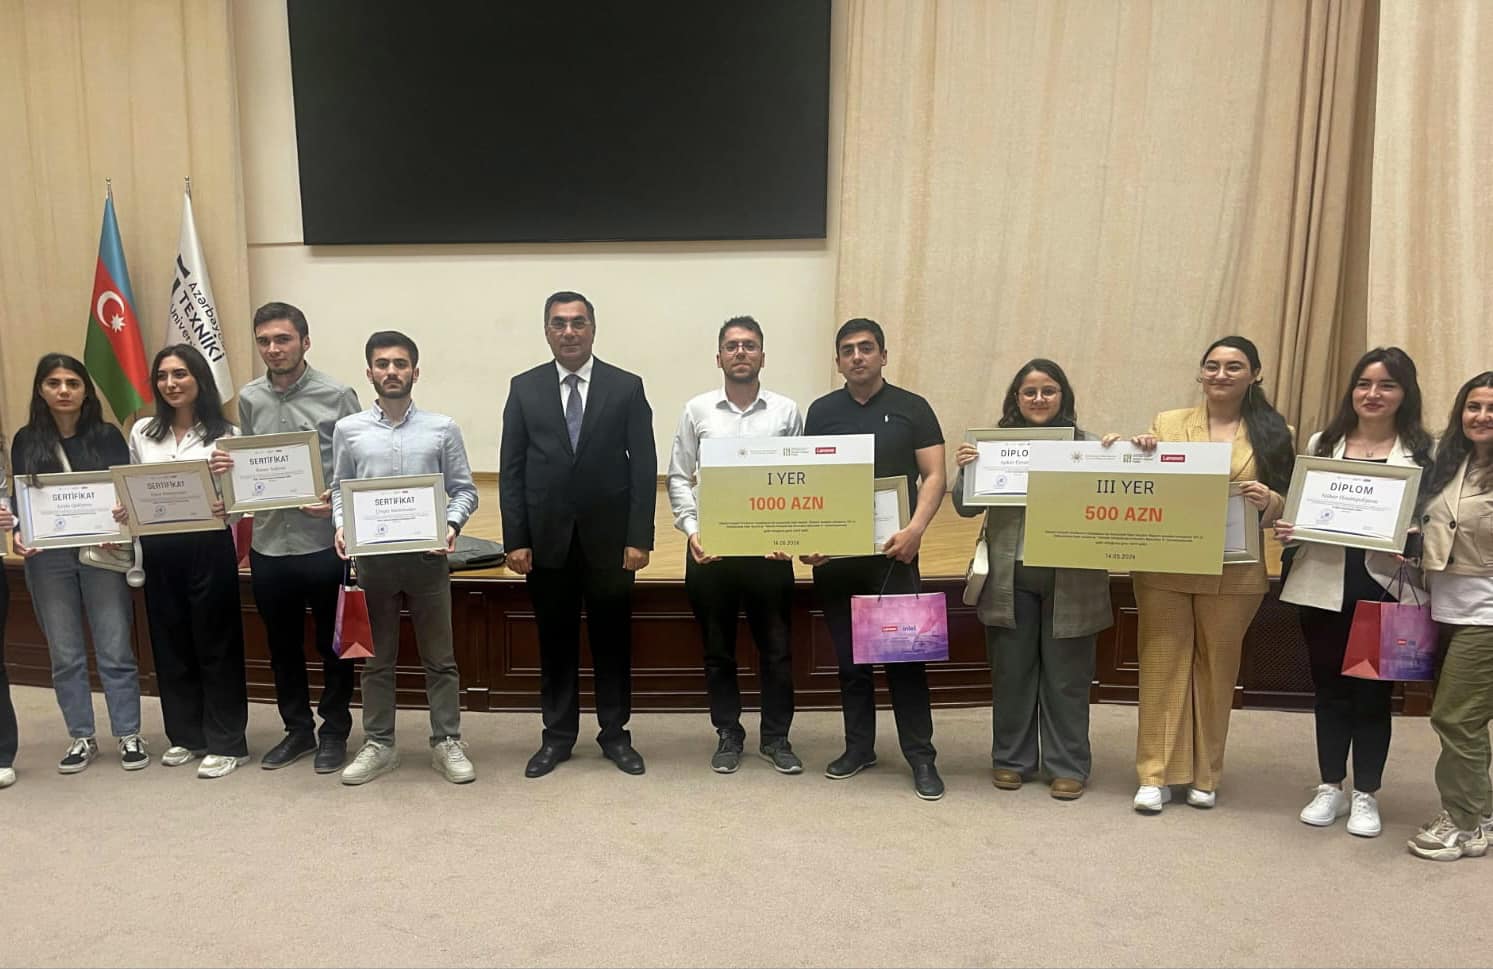 Студенты Бакинской высшей школы нефти стали победителями конкурса “Инновационные методы в развитии образования II” 